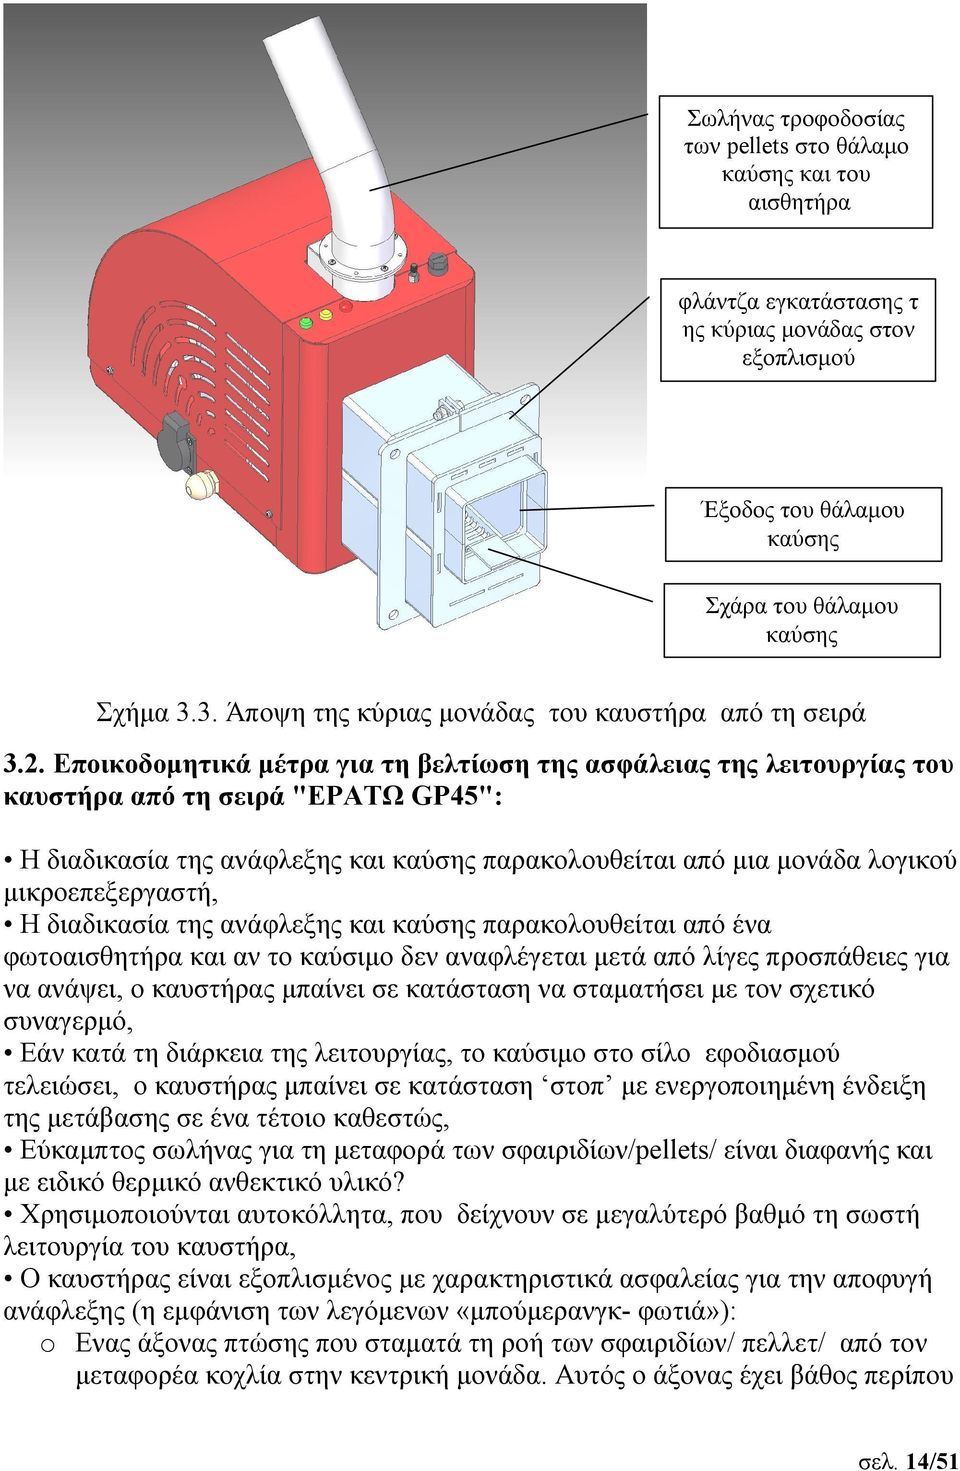 Εποικοδομητικά μέτρα για τη βελτίωση της ασφάλειας της λειτουργίας του καυστήρα από τη σειρά "ΕΡΑΤΩ GP45": Η διαδικασία της ανάφλεξης και καύσης παρακολουθείται από μια μονάδα λογικού